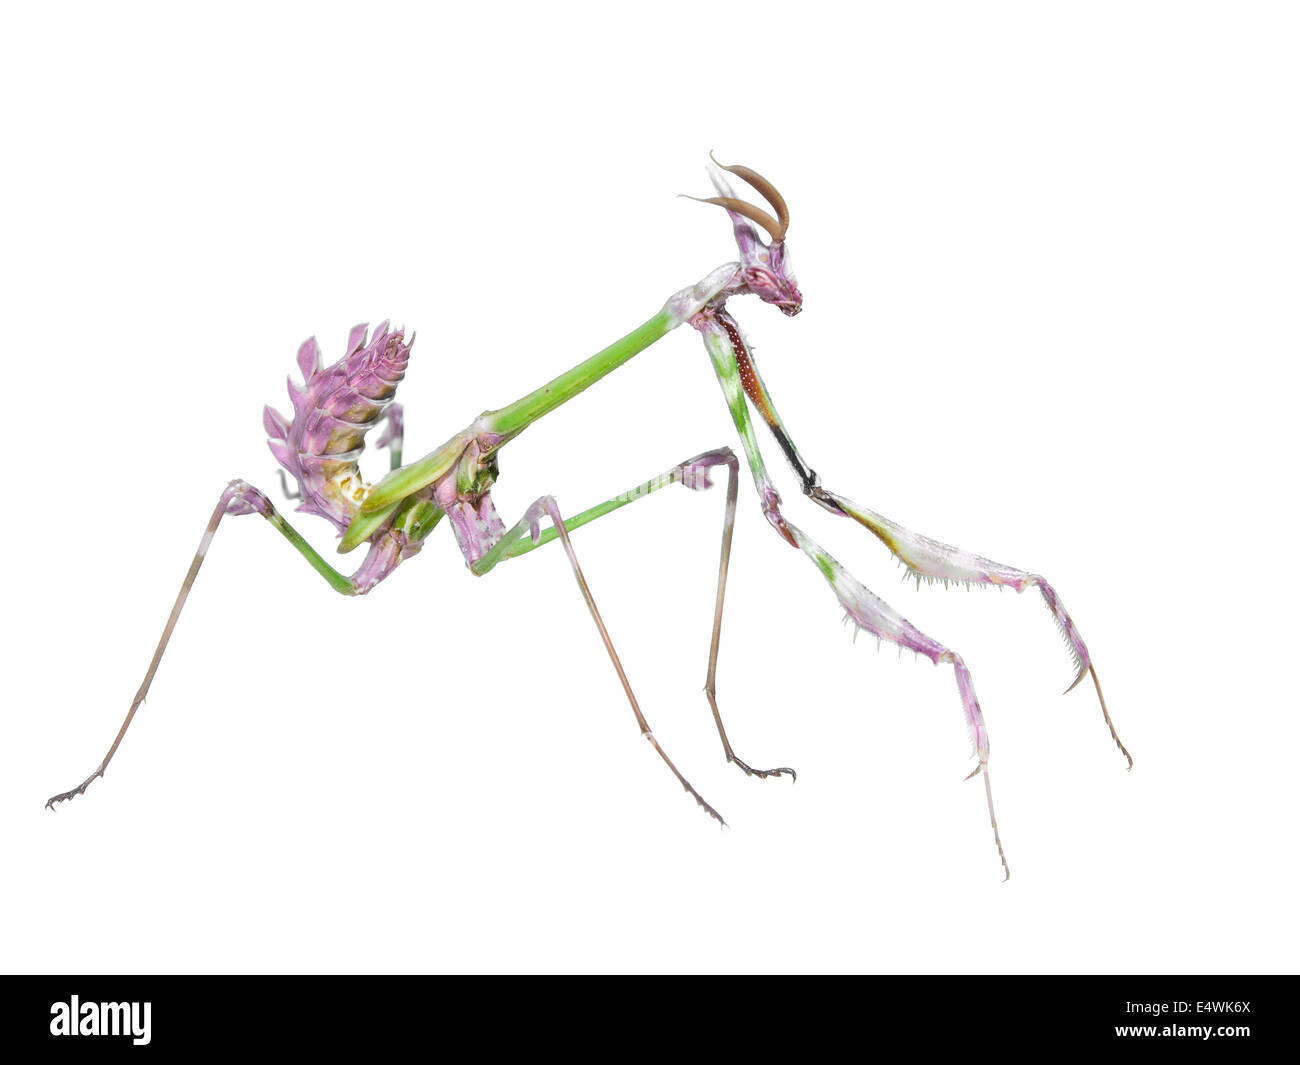 Pericoloso predatore mantis catture di insetto preda con lunghe zampe anteriori spiked isolati su sfondo bianco Foto Stock